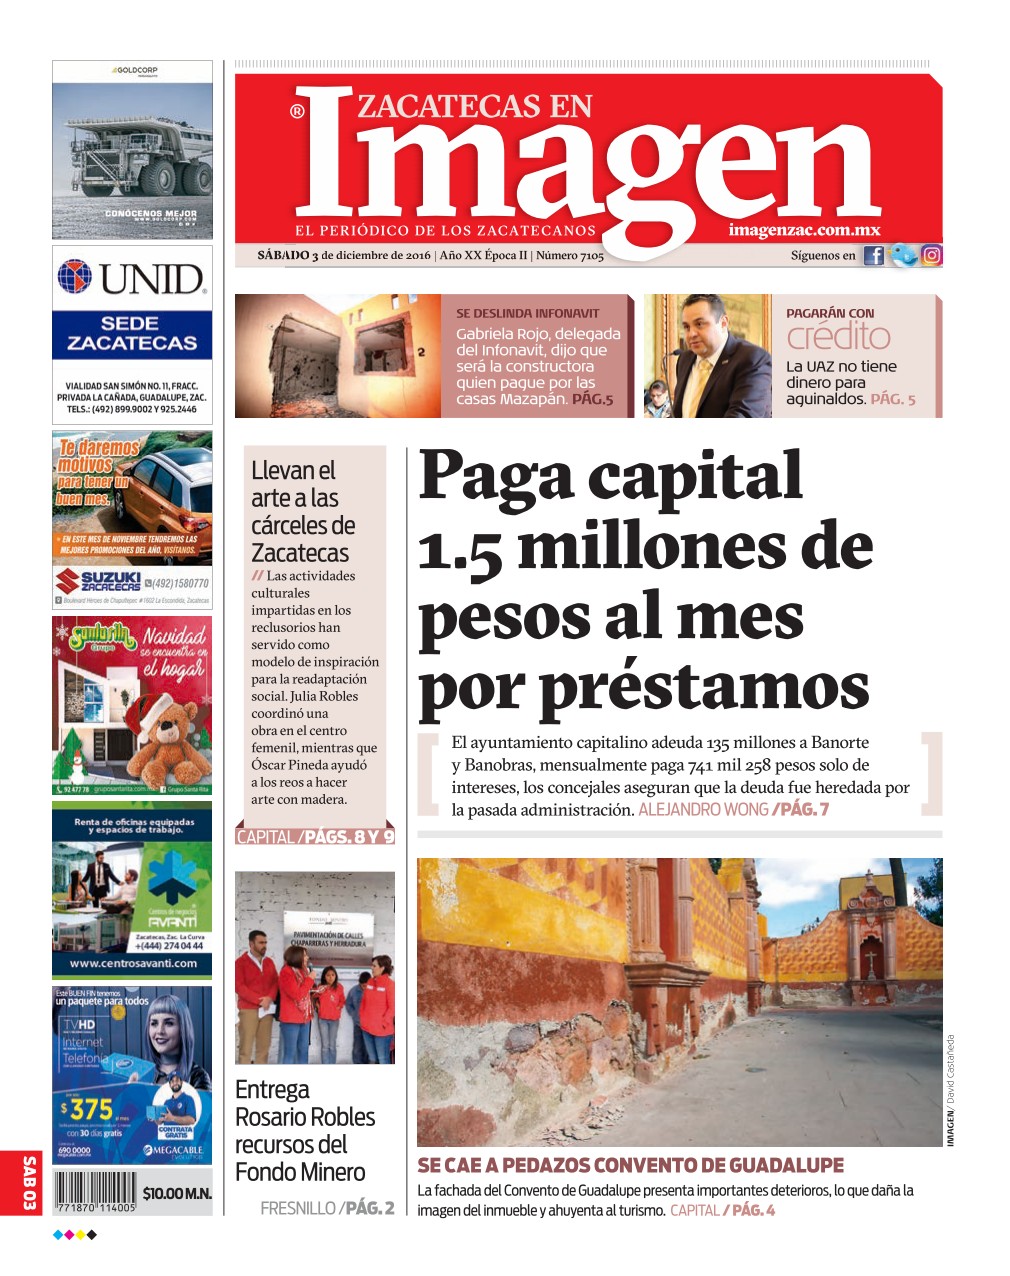 Imagen Zacatecas edición del 03 de Diciembre 2016